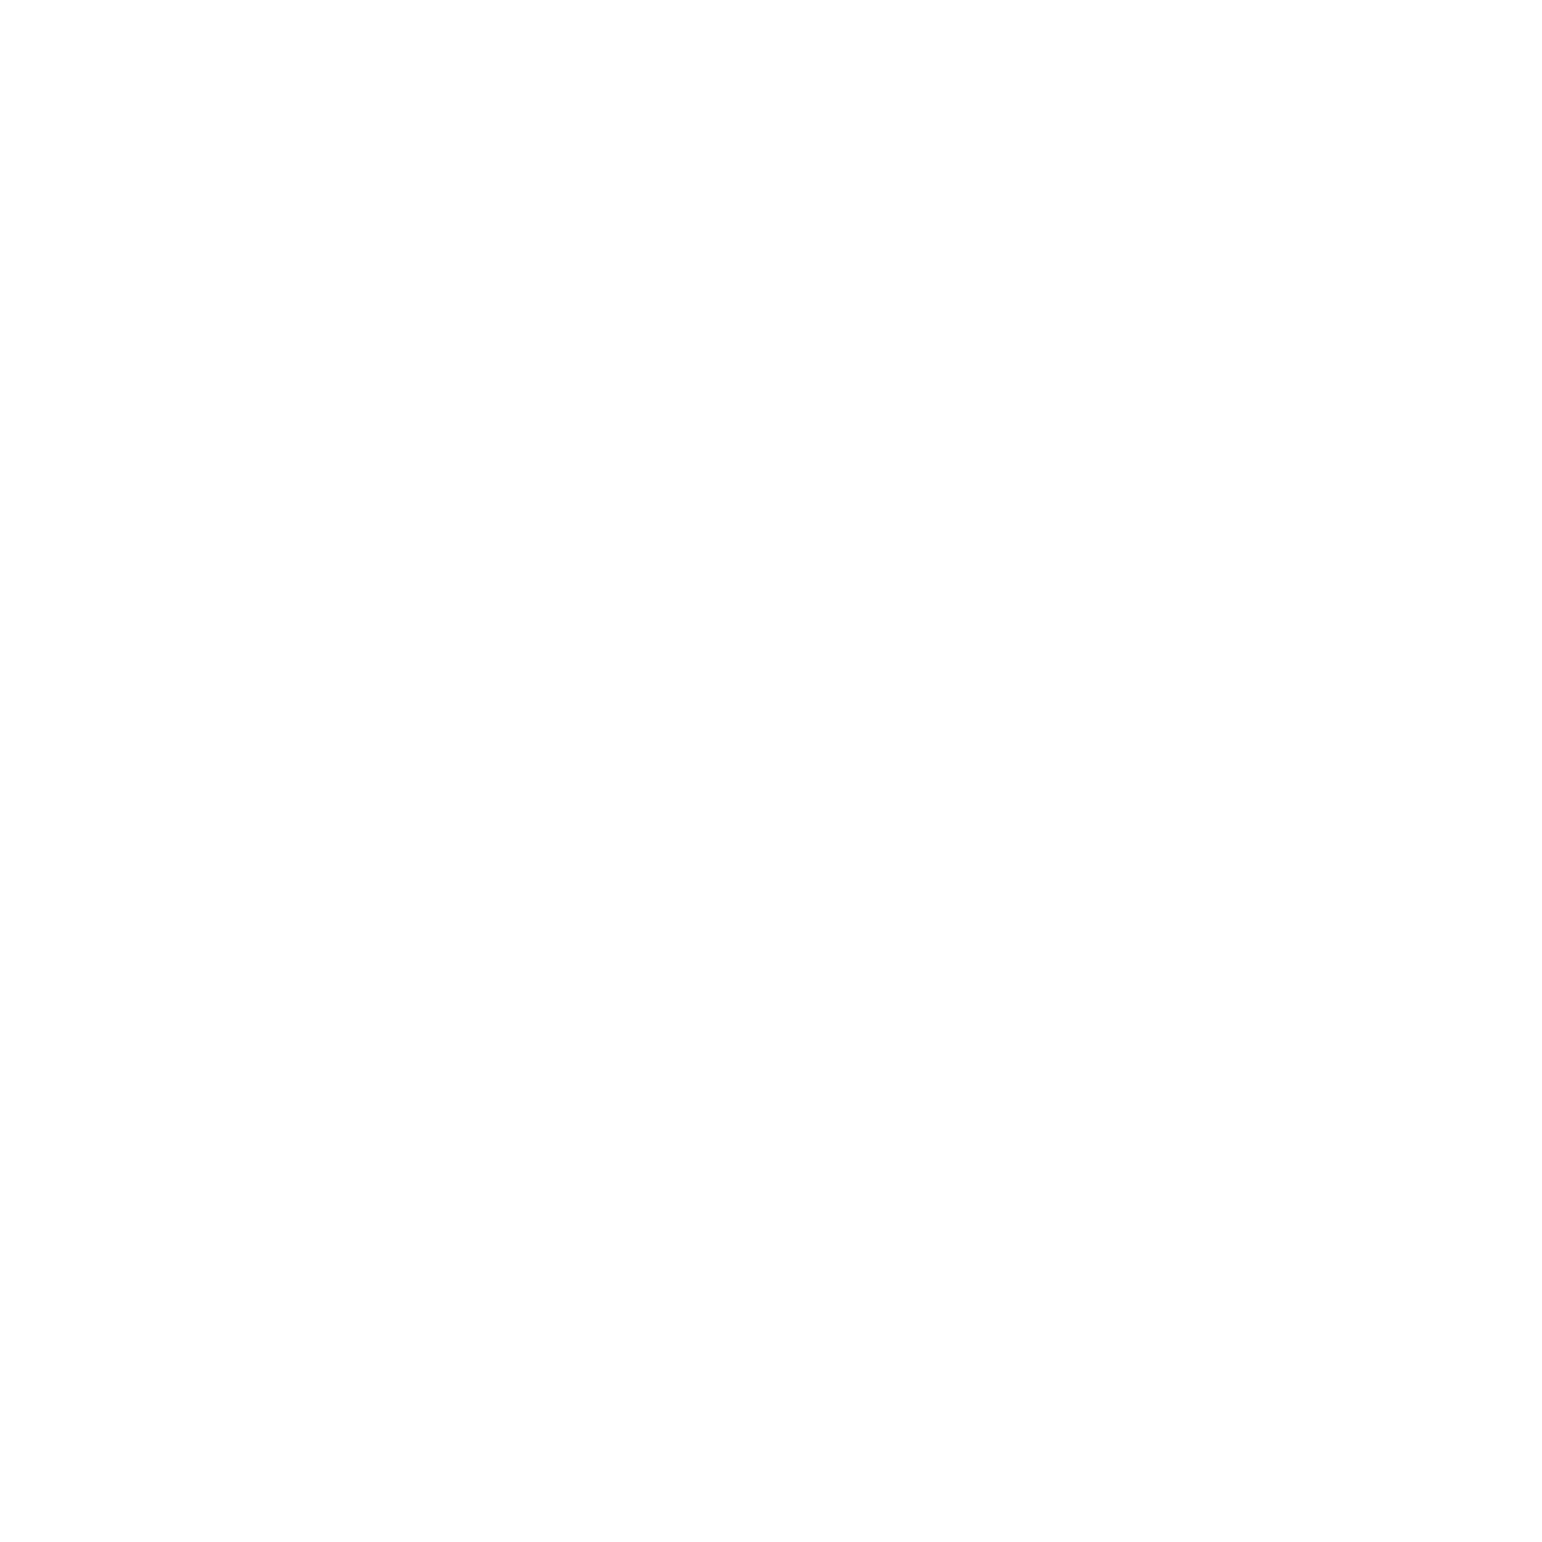 MDA Ltd. logo for dark backgrounds (transparent PNG)